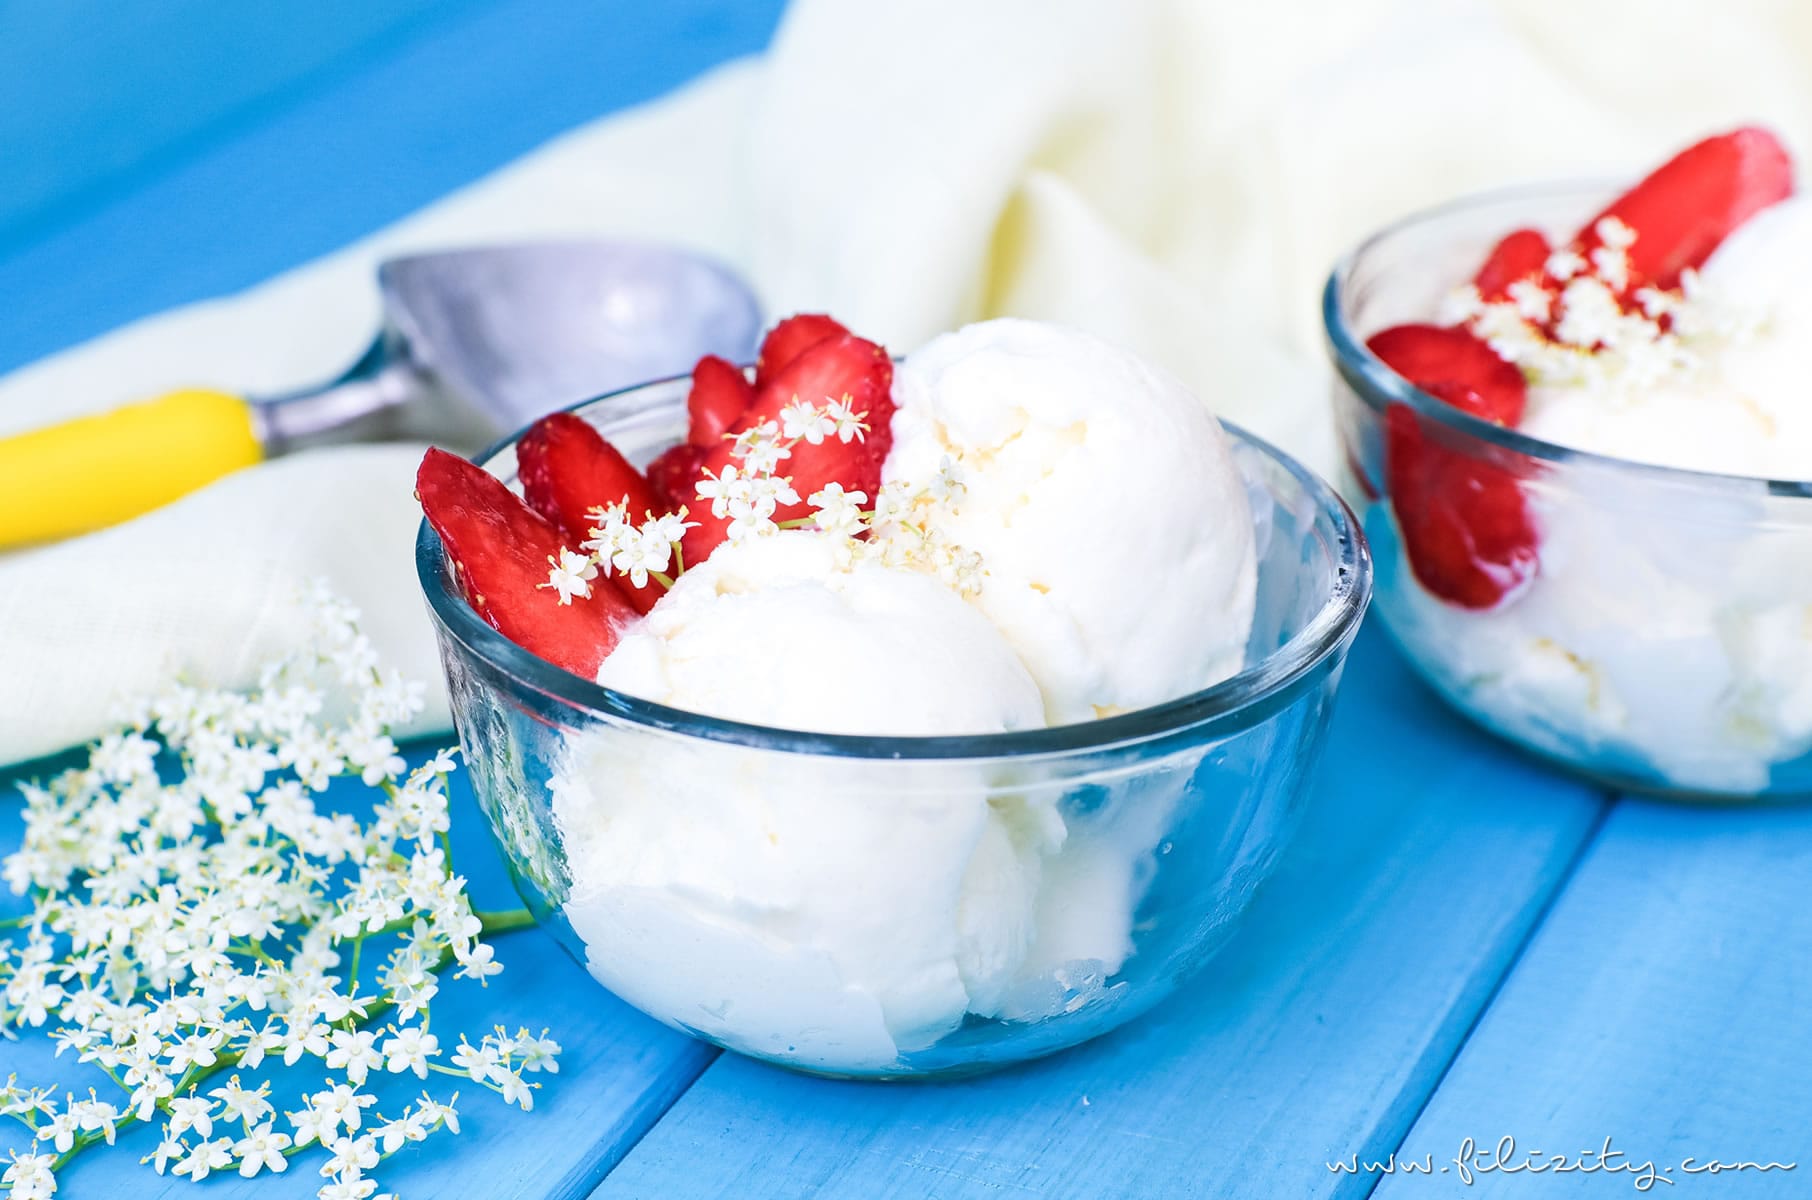 Holunderblüten Frozen Yogurt selber machen | Holler Frozen Yoghurt Rezept mit und ohne Eismaschine | Filizity.com | Food-Blog aus dem Rheinland #ice #frozenyoghurt #sommer